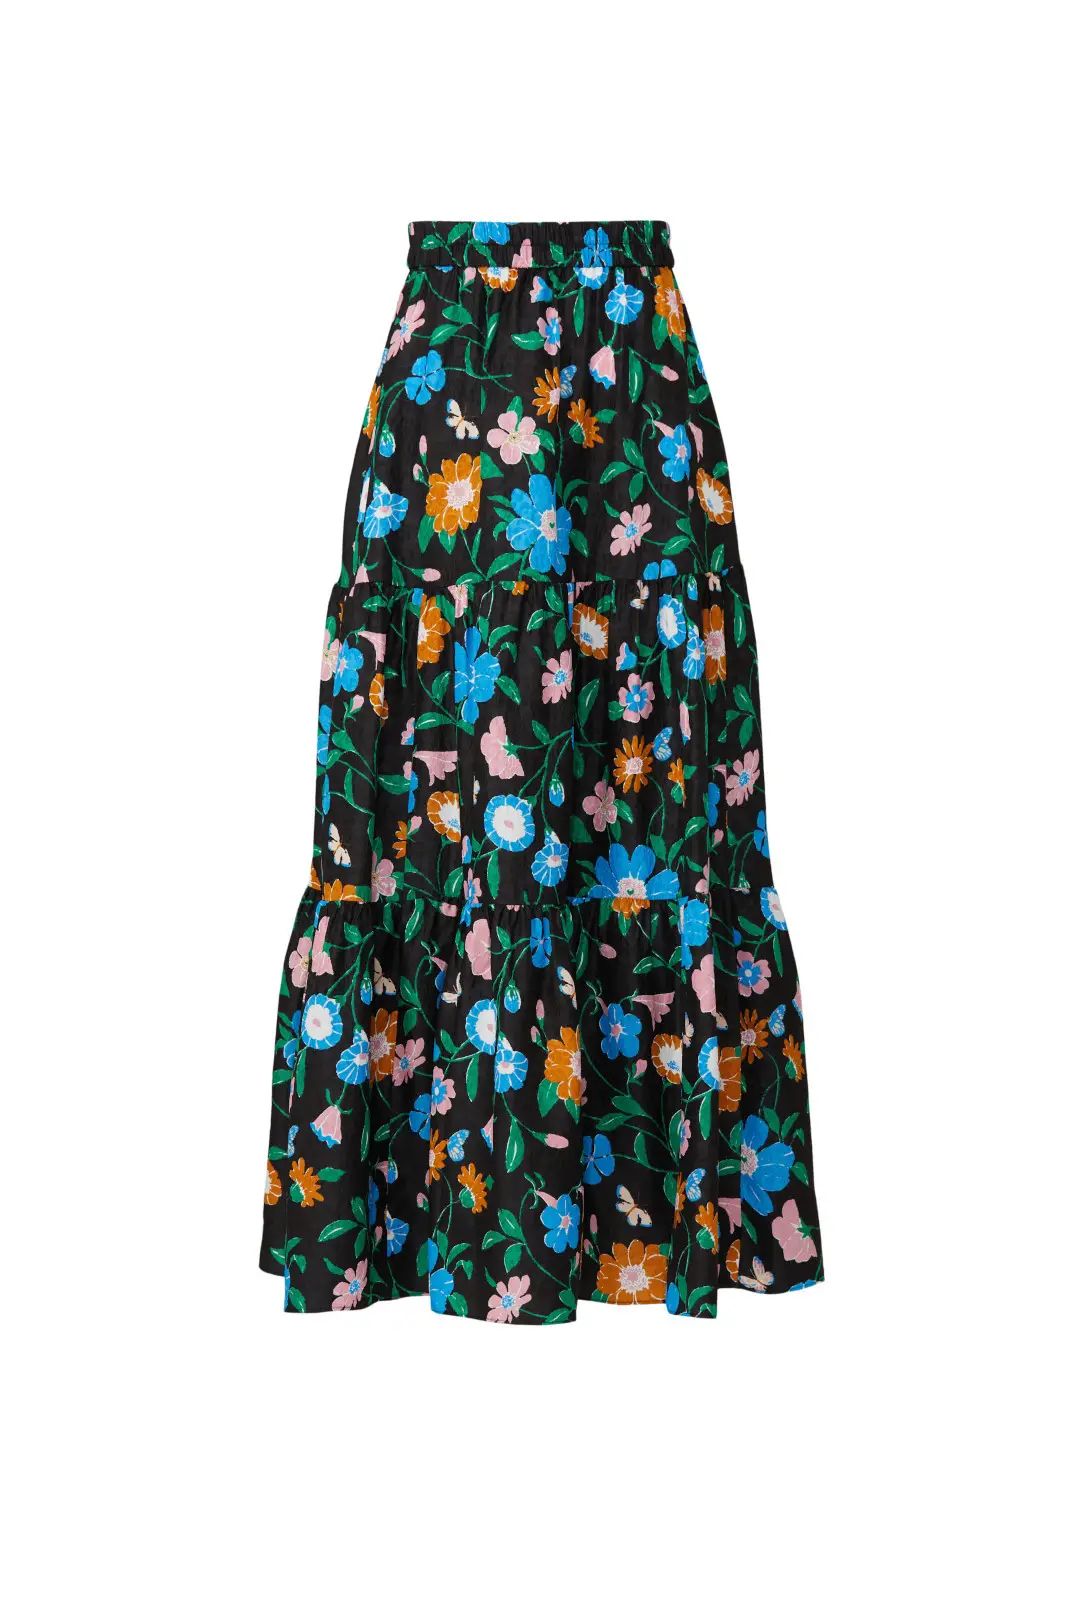 kate spade new york Floral Garden Skirt | Rent the Runway